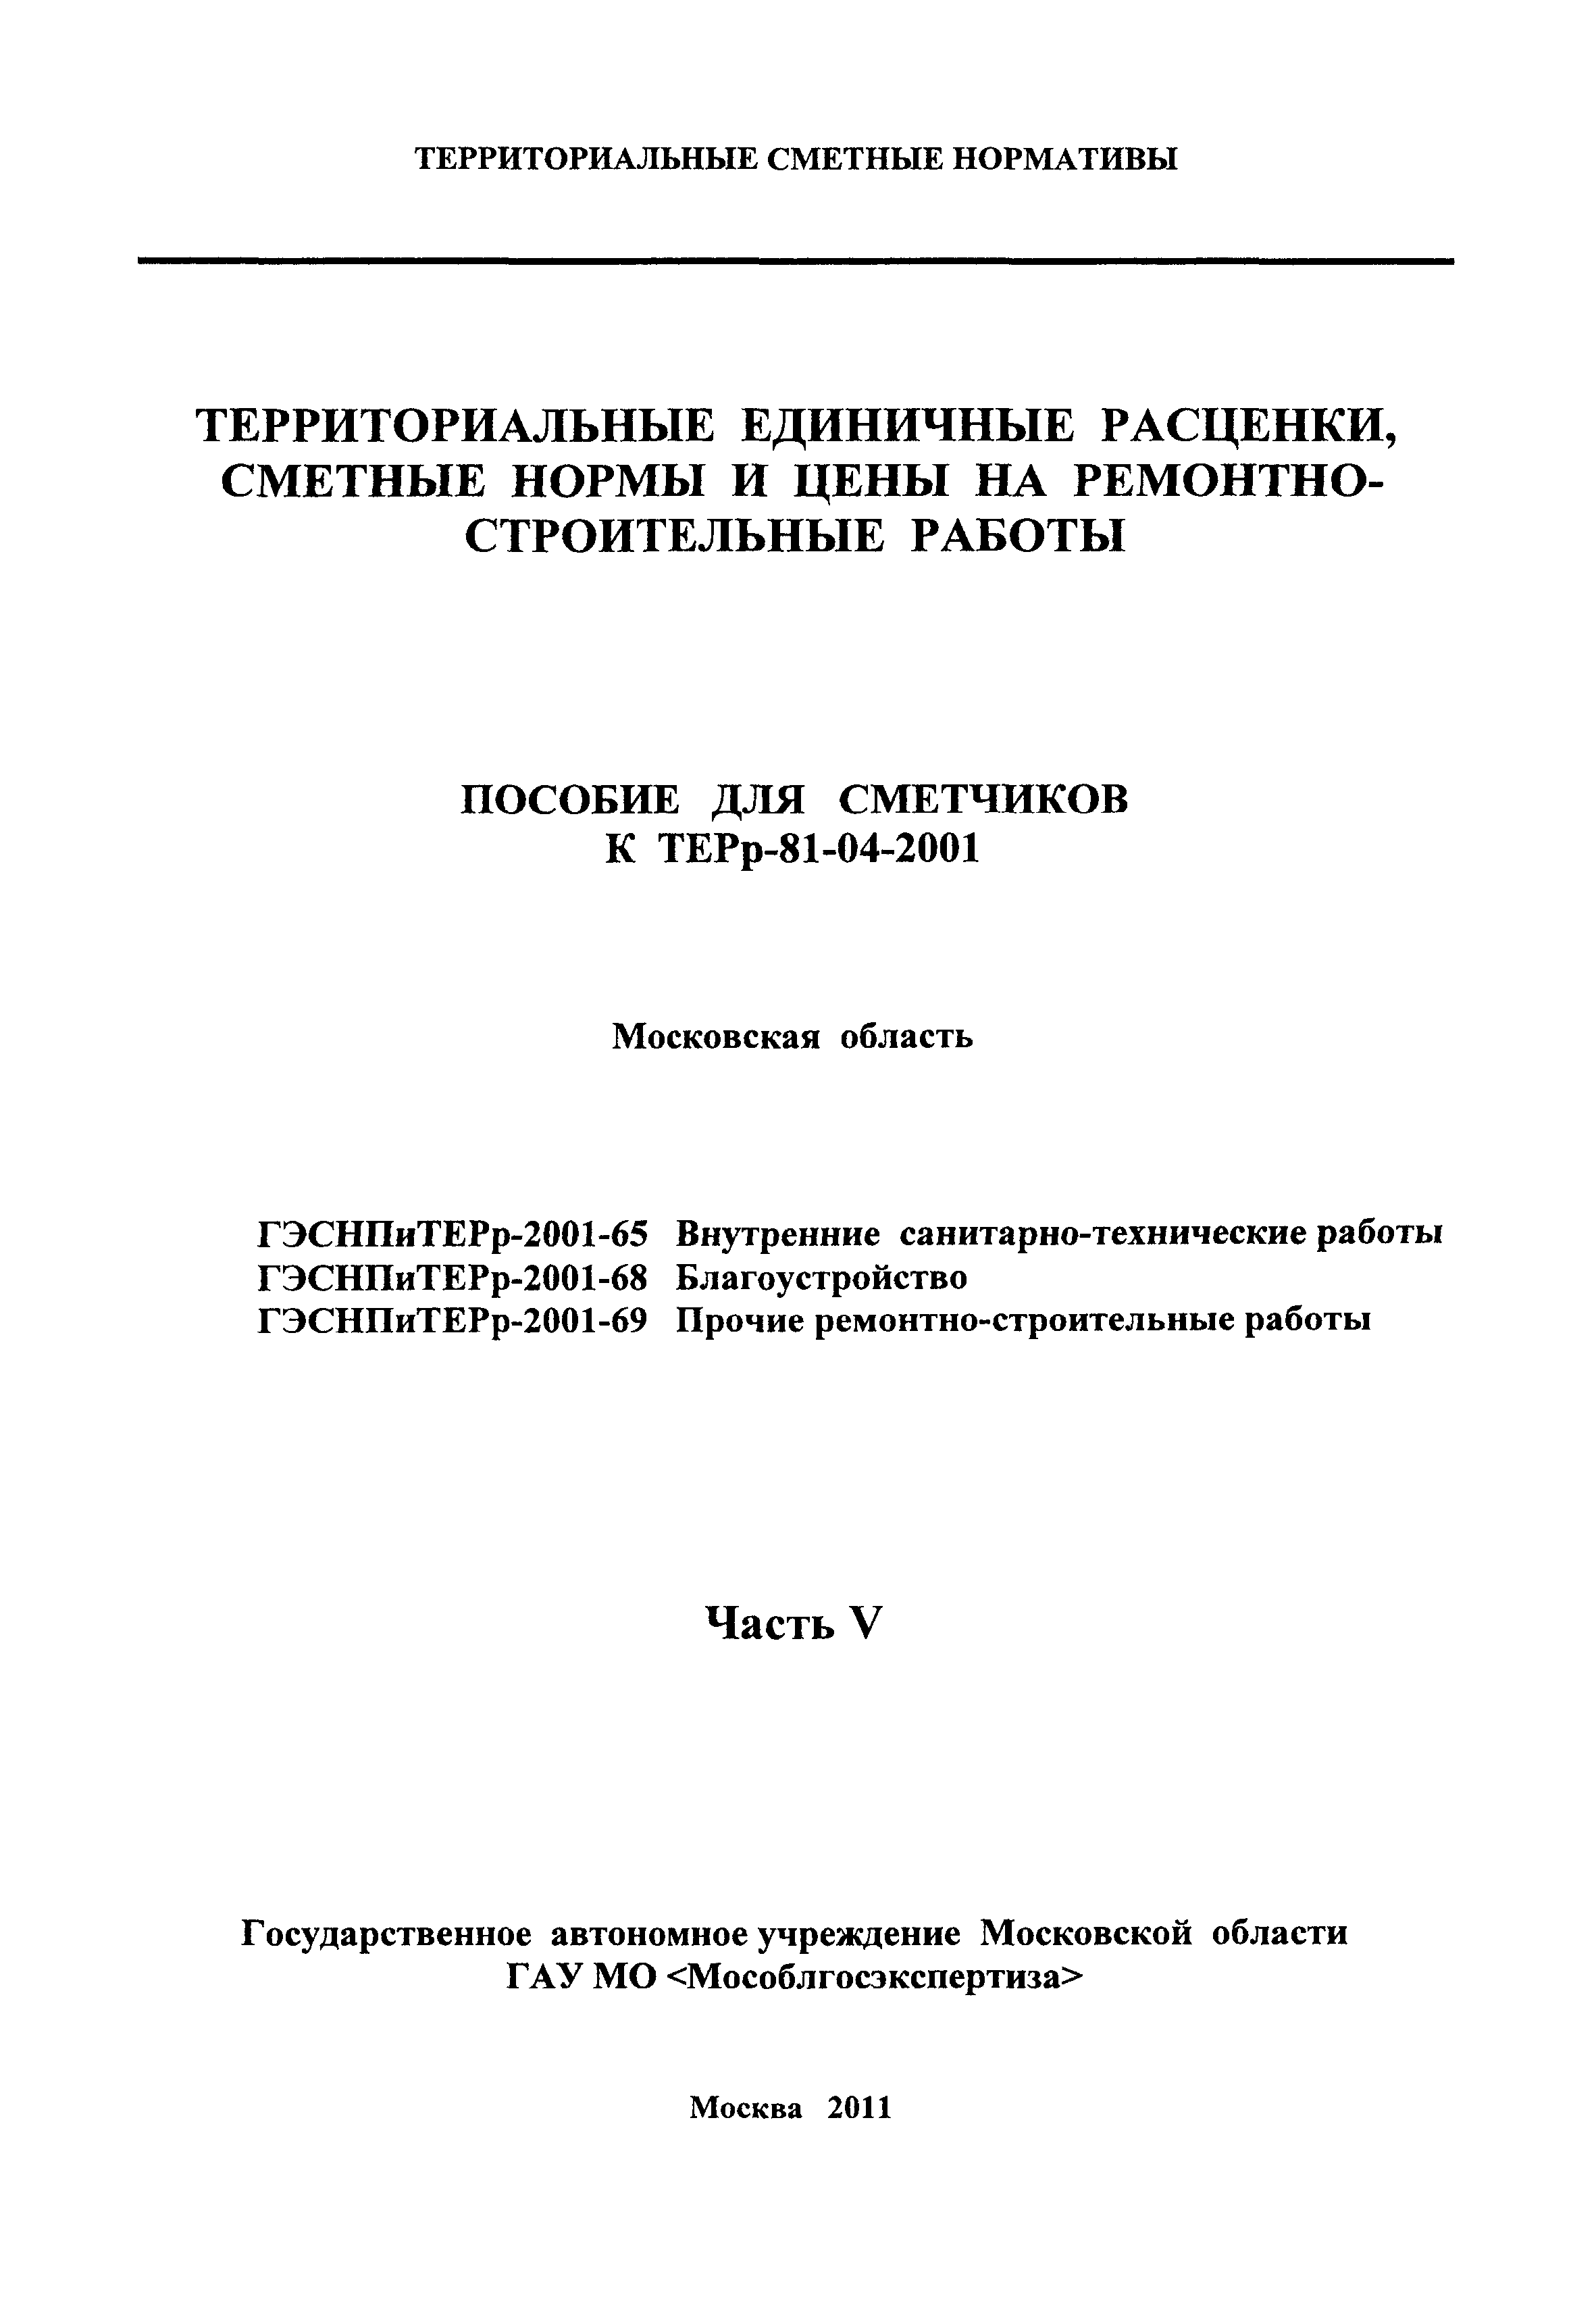 ГЭСНПиТЕРр 2001-65 Московской области